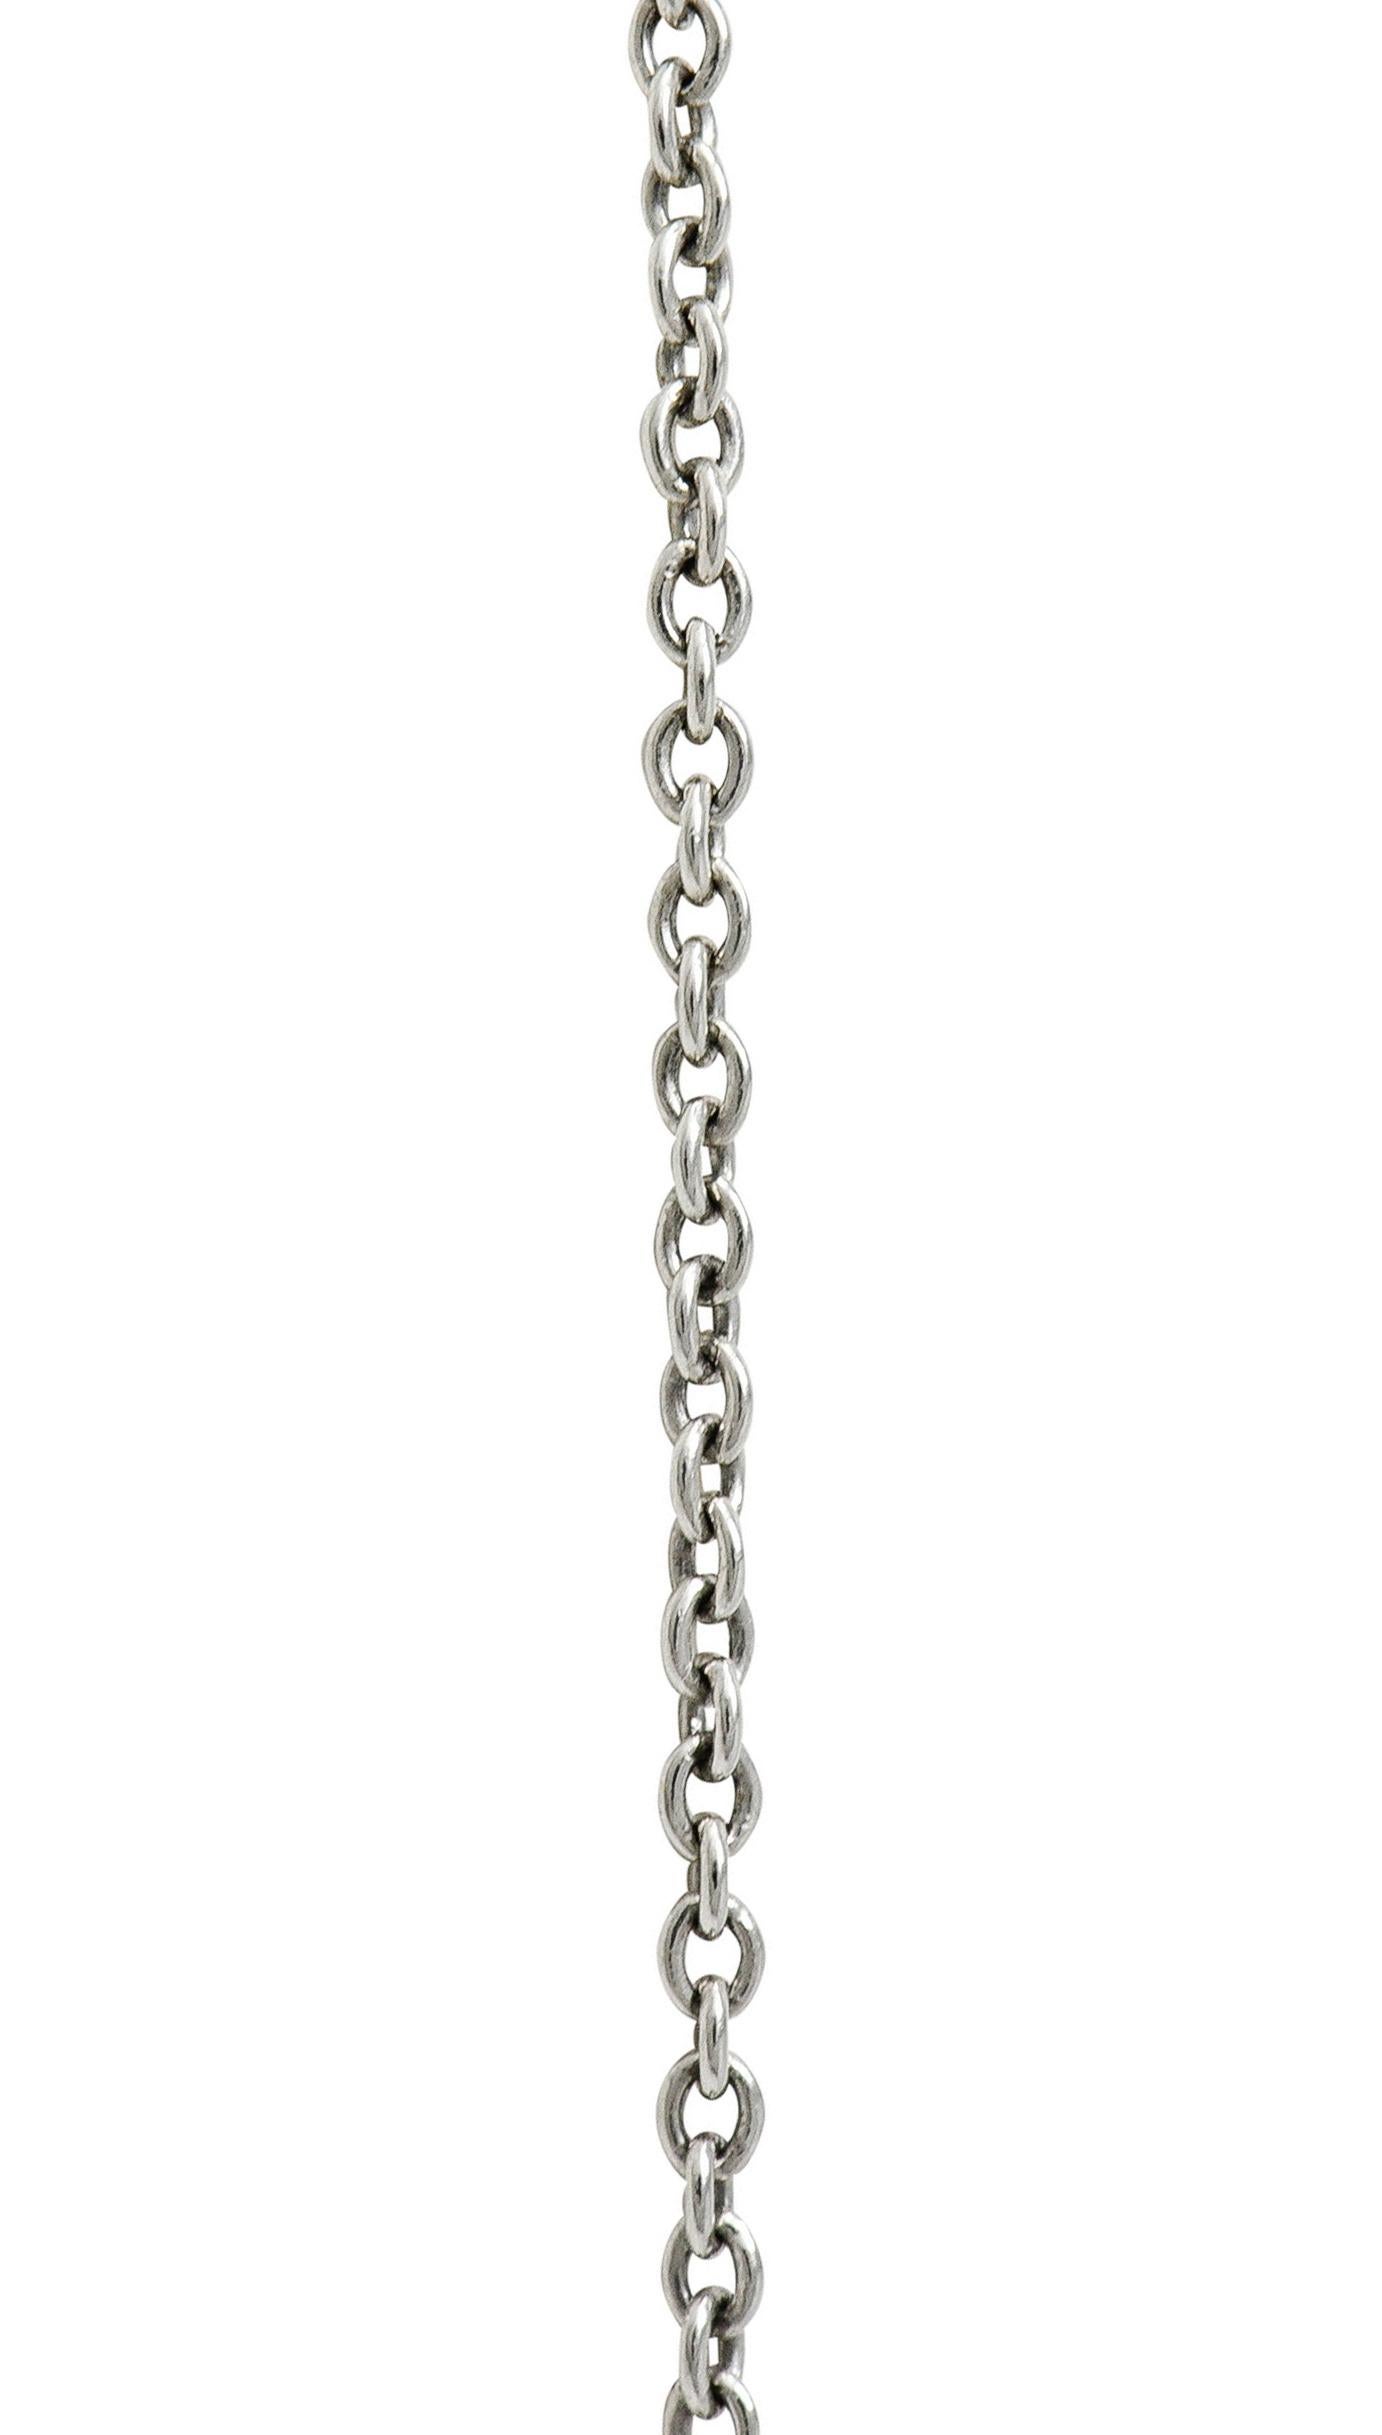 Brilliant Cut Elsa Peretti Tiffany & Co. Diamond Platinum Open Heart Pendant Necklace